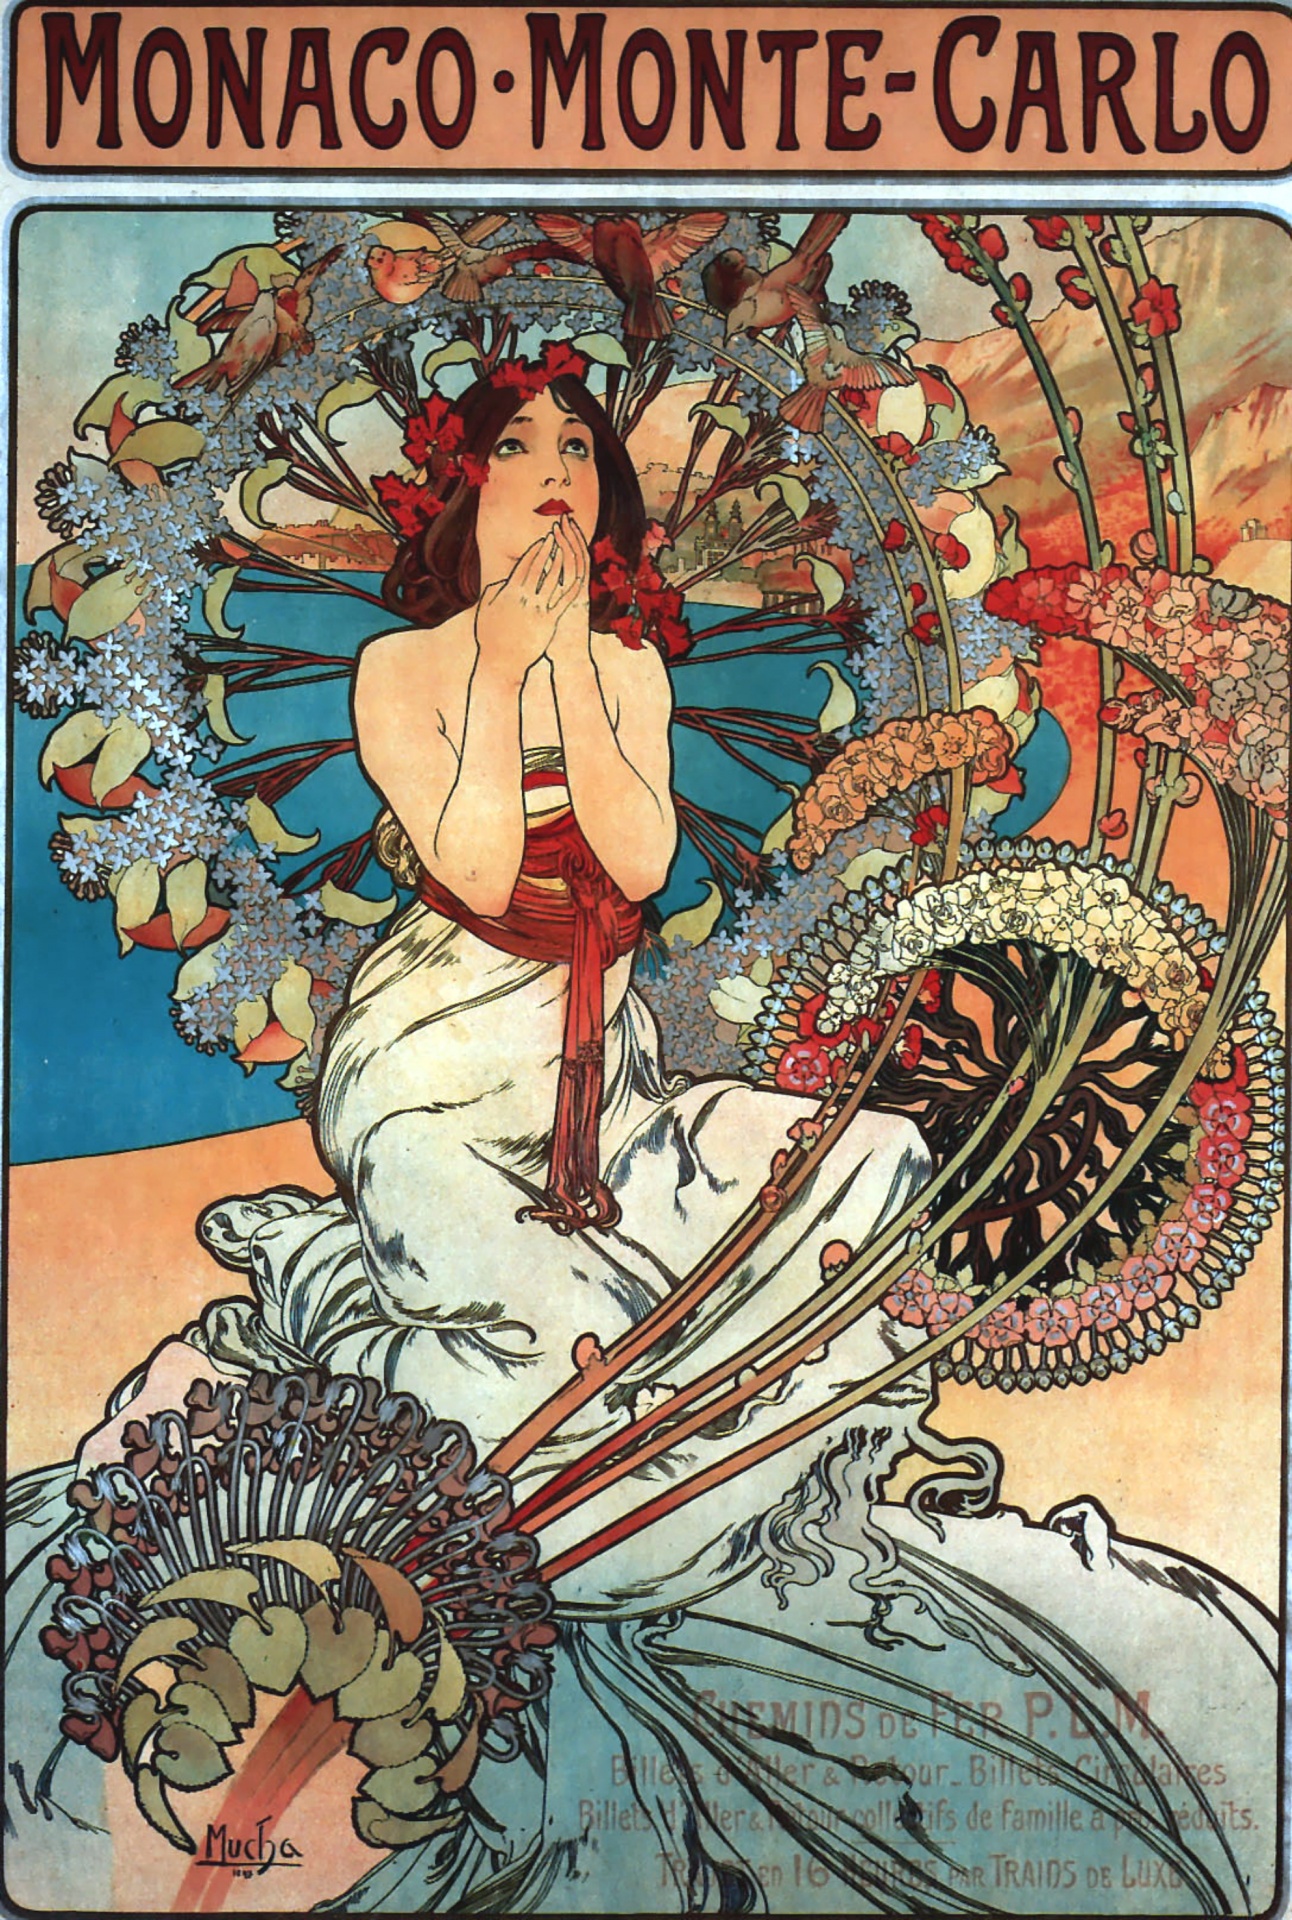 Woman Art Nouveau Art Vintage Poster Alphonso Mucha Illustration